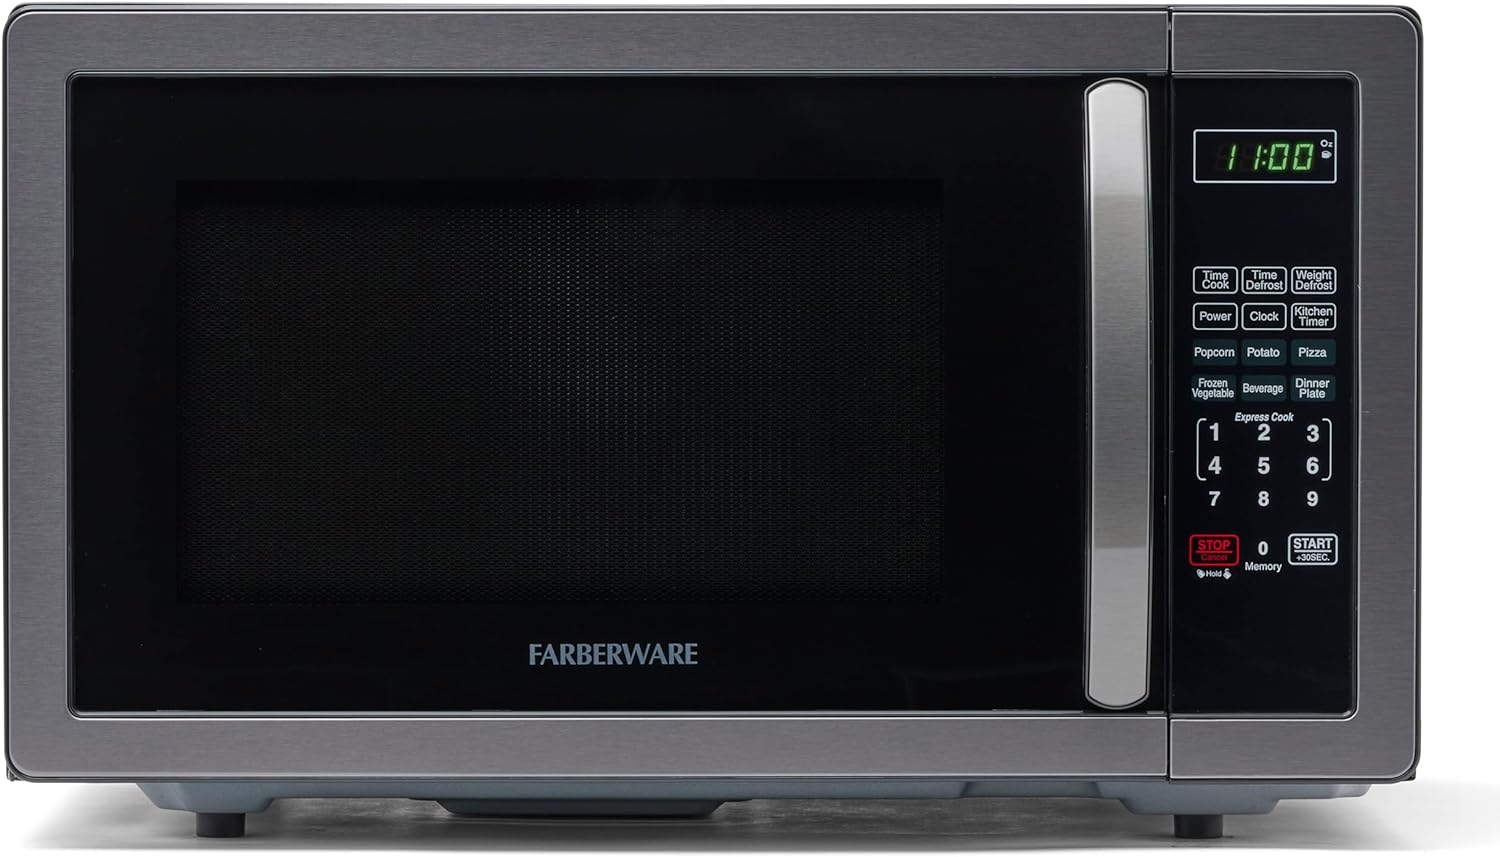 Farberware Microwave Review